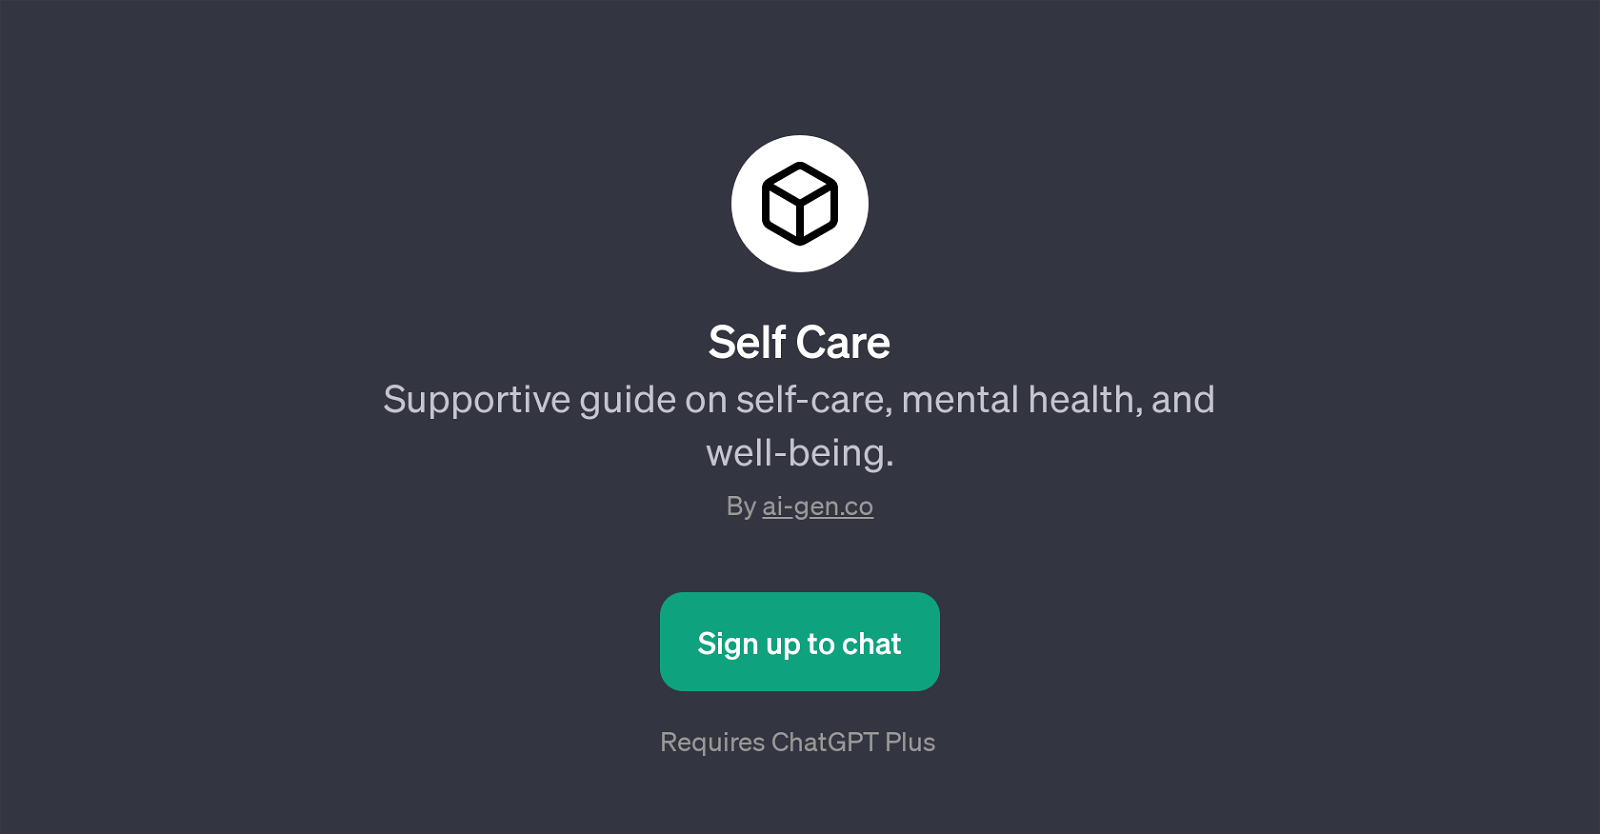 Self Care website